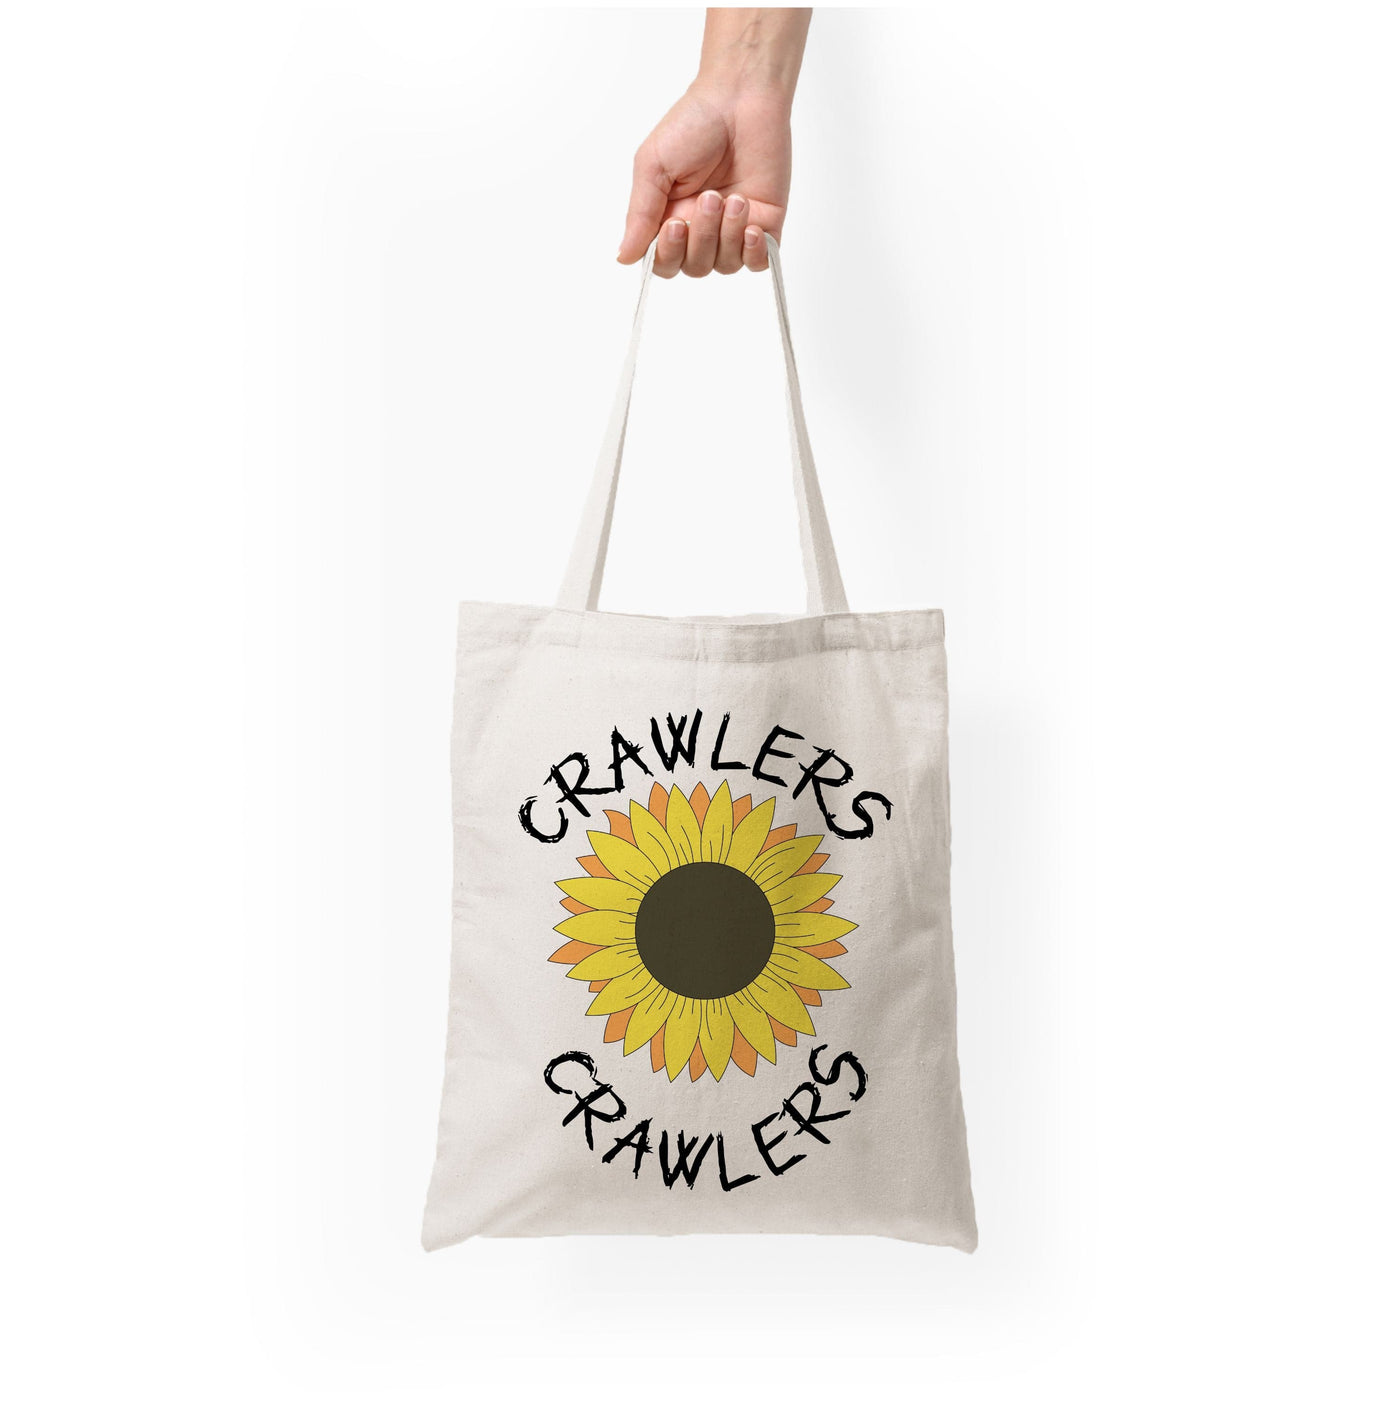 Crawlers - Festival Tote Bag